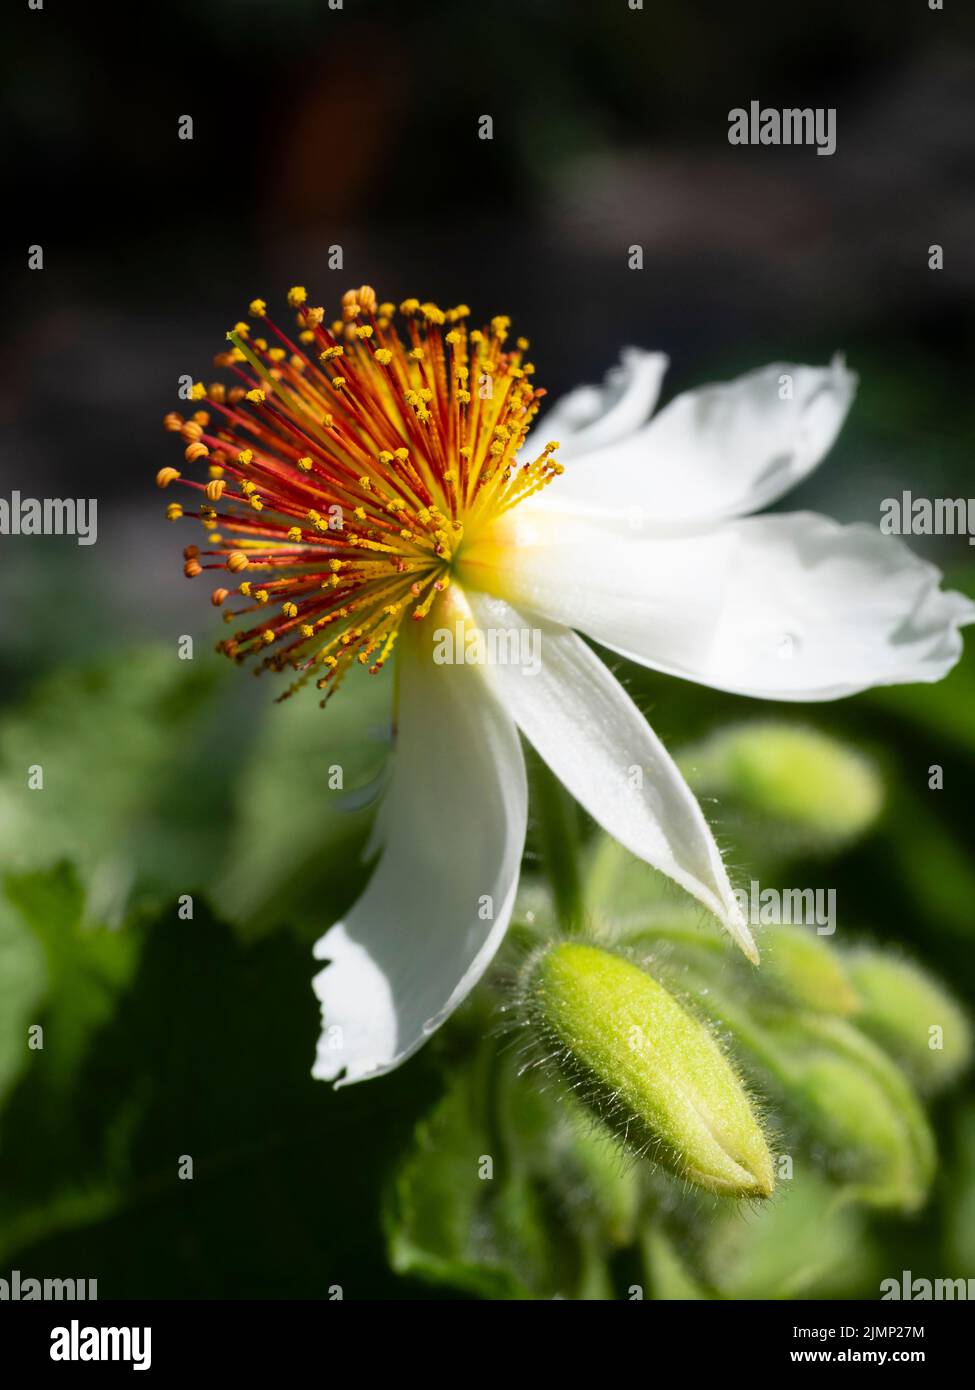 Flor blanca de pétalos con estambres rojos y amarillos prominentes del tierno arbusto perennifolio, Spirmannia africana Foto de stock